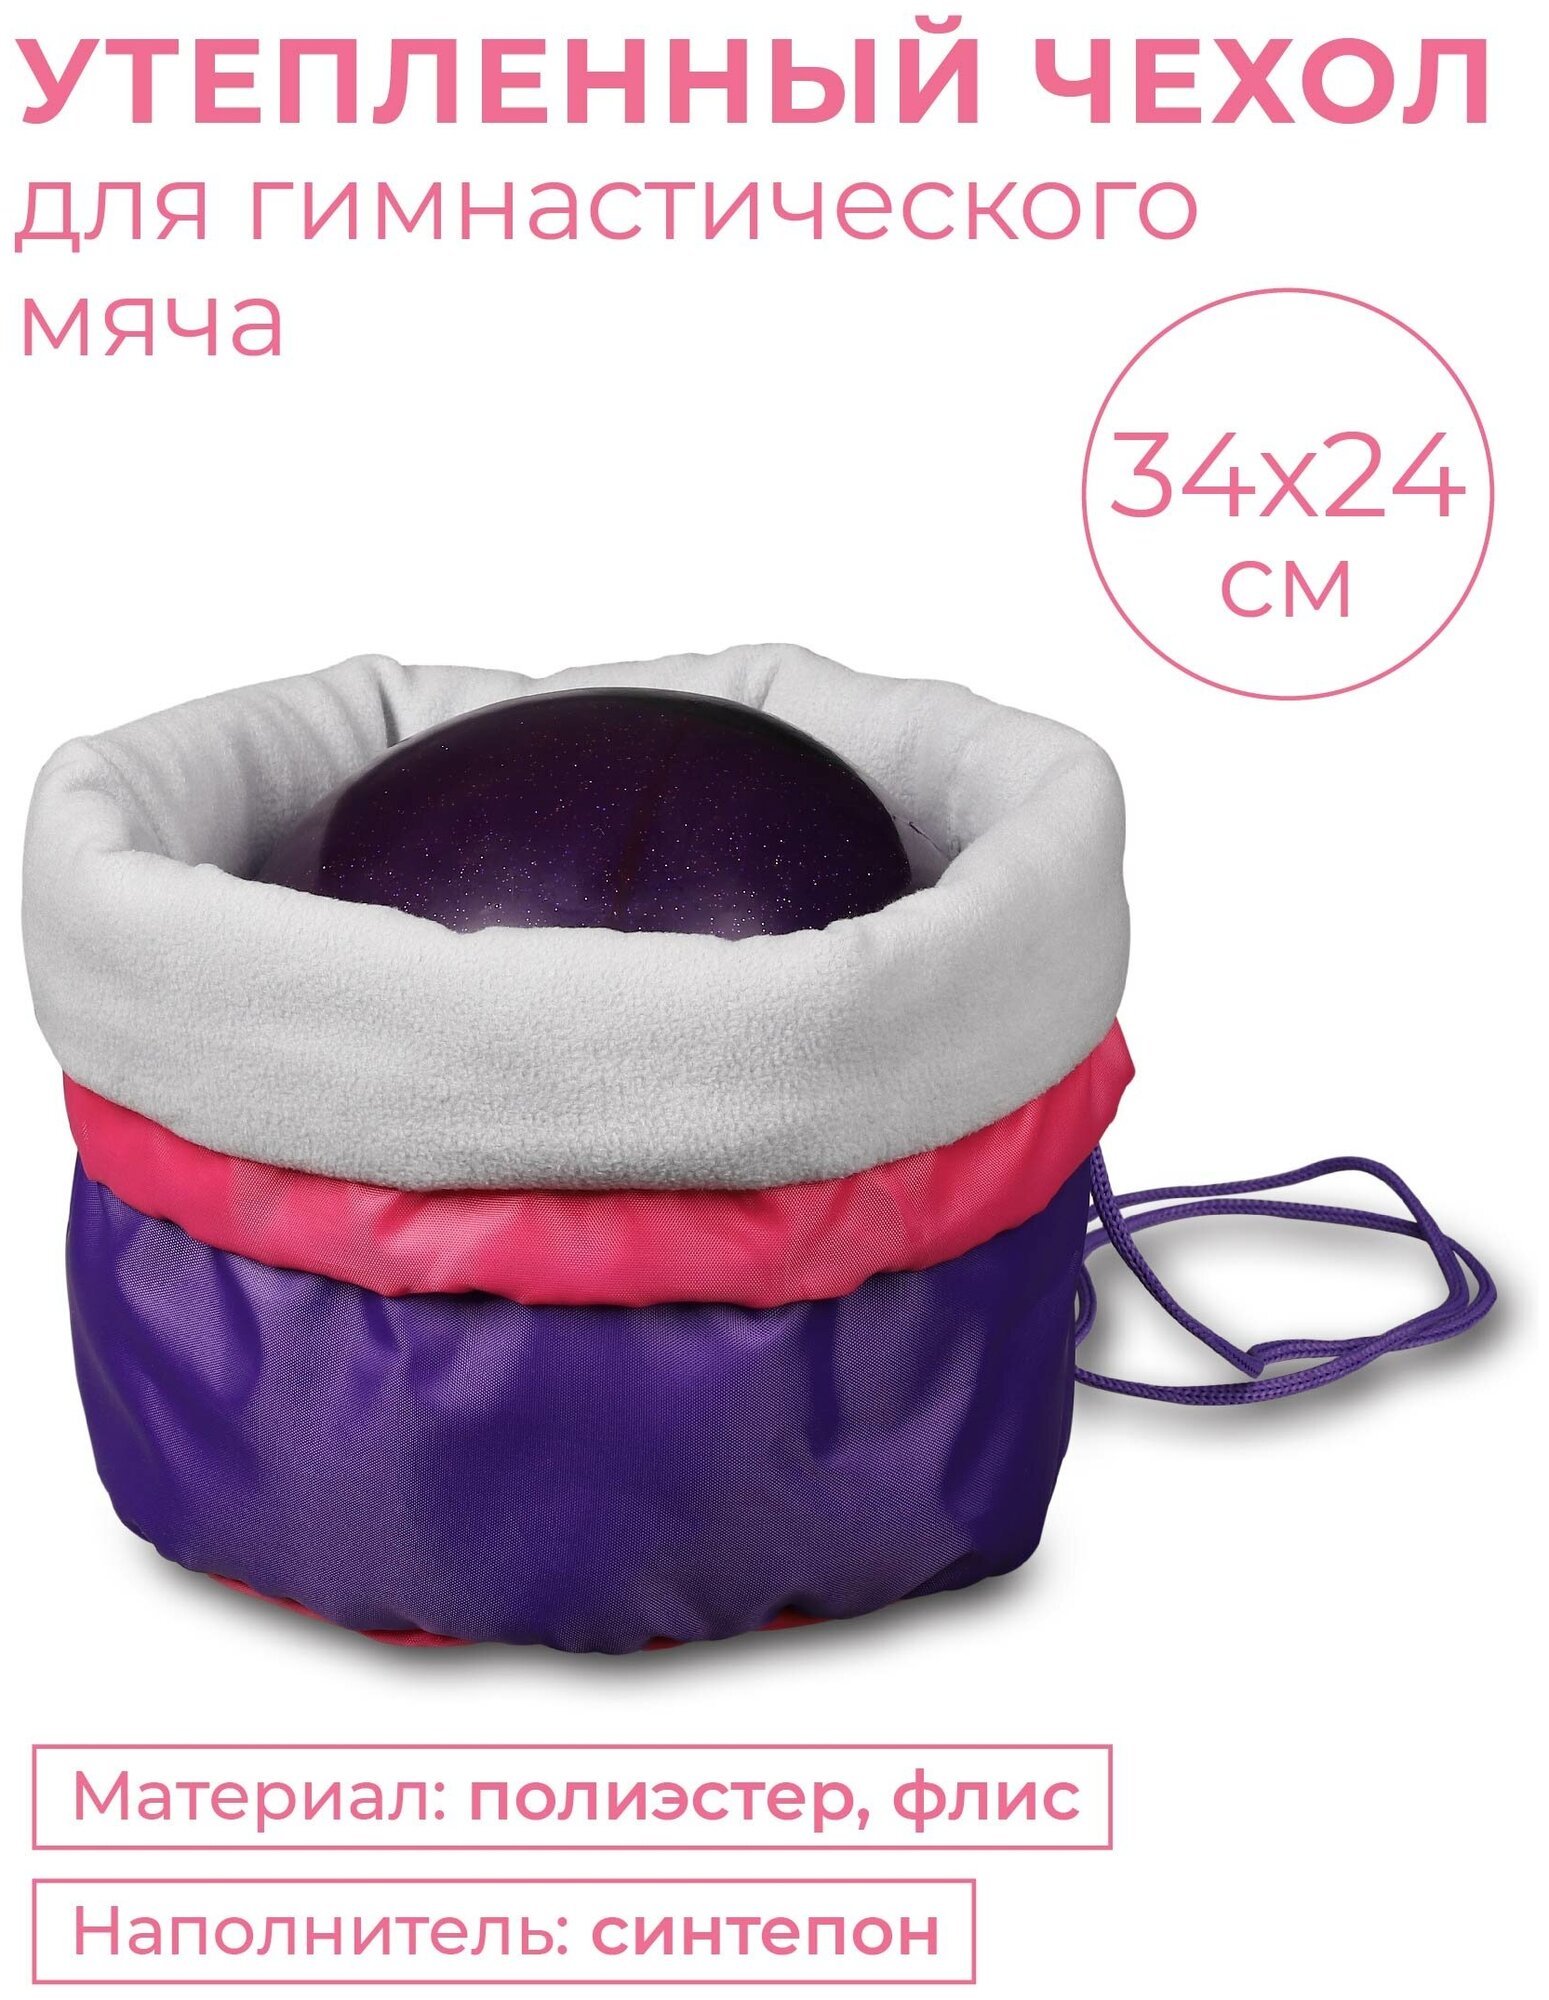 Чехол для мяча гимнастического утепленный INDIGO SM-335 Фиолетовый 34*24 см